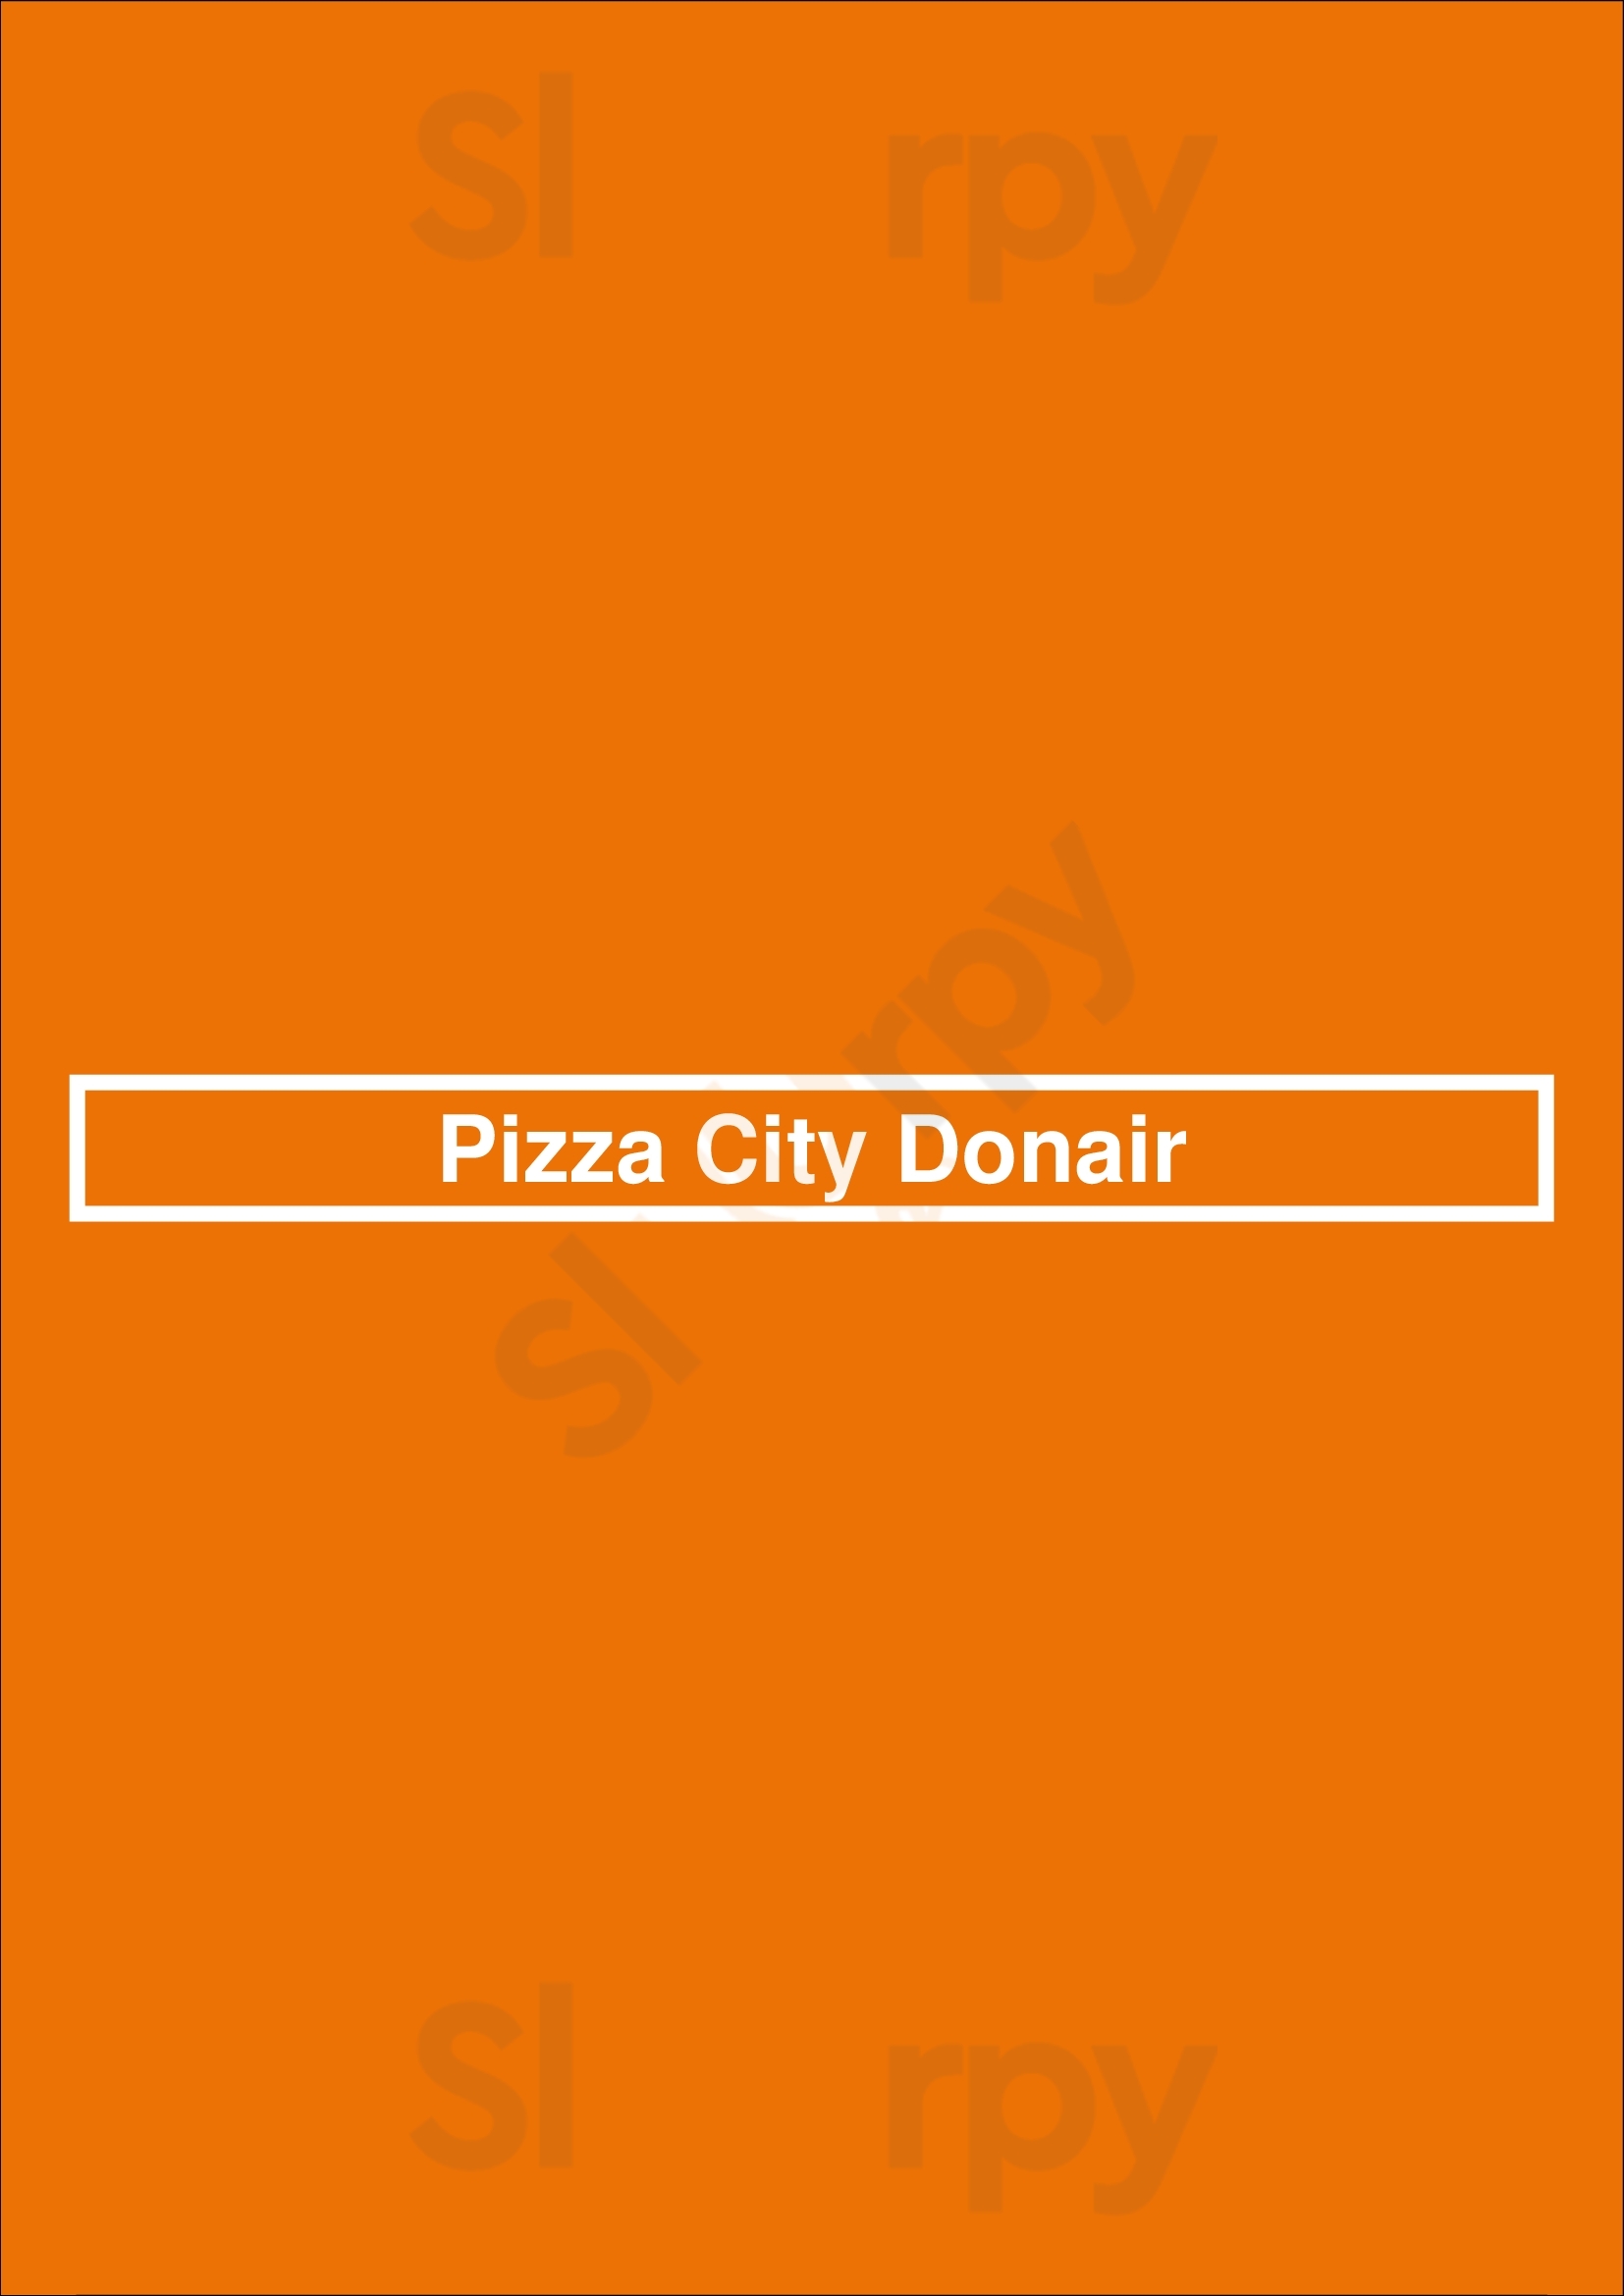 Pizza City Donair Edmonton Menu - 1